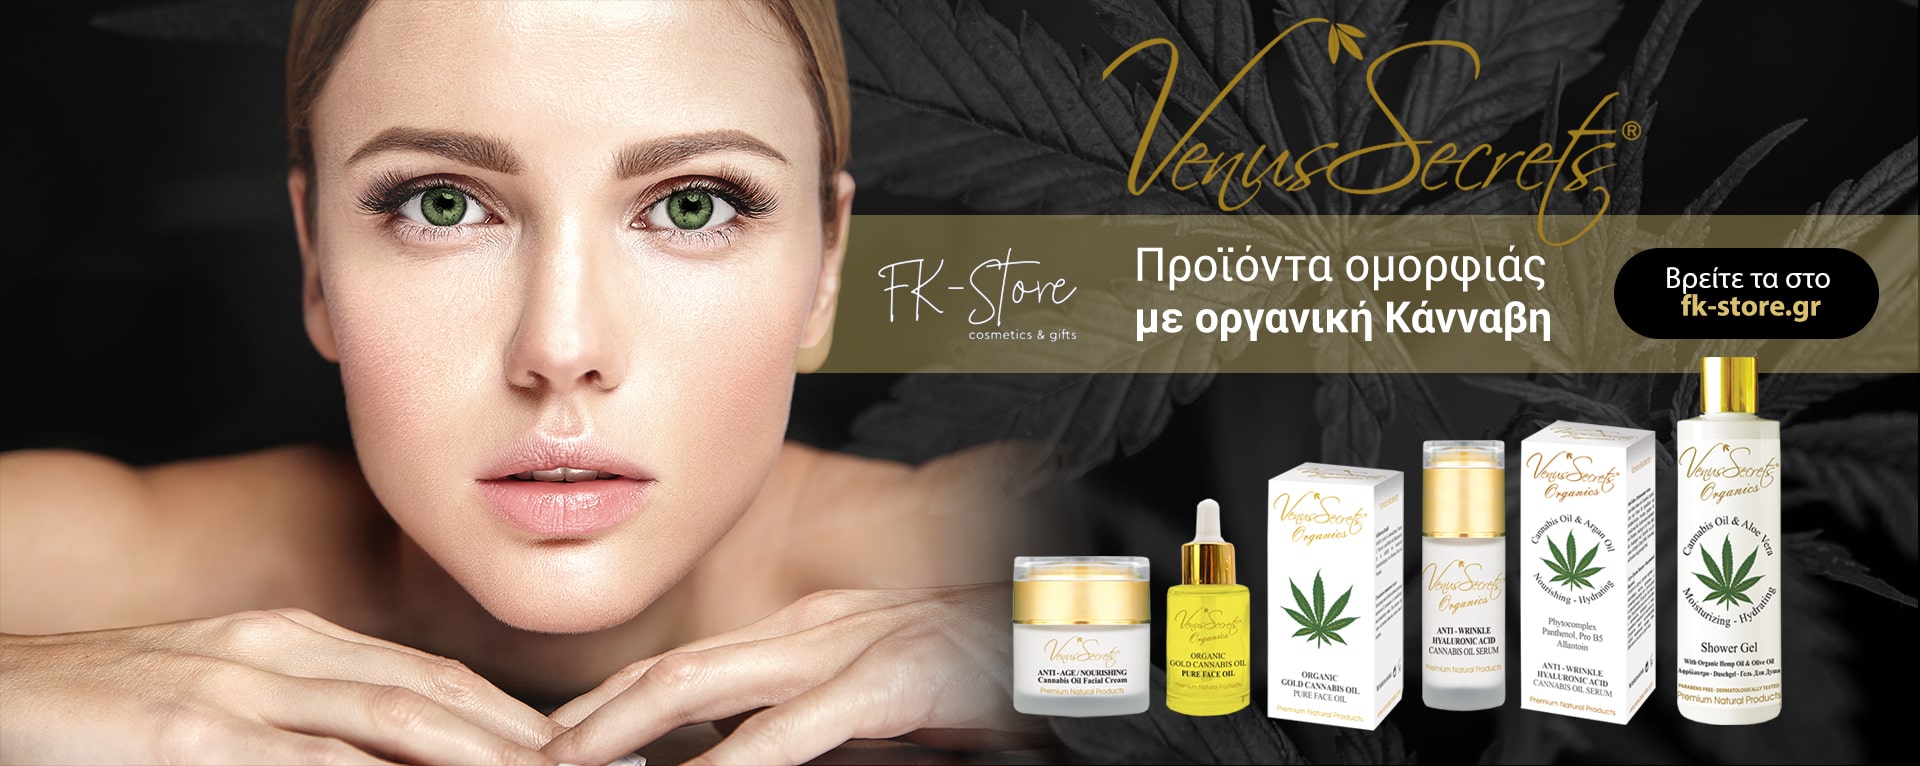 Προϊόντα Ομορφιάς με οργανική κάνναβη | Fk-store.gr